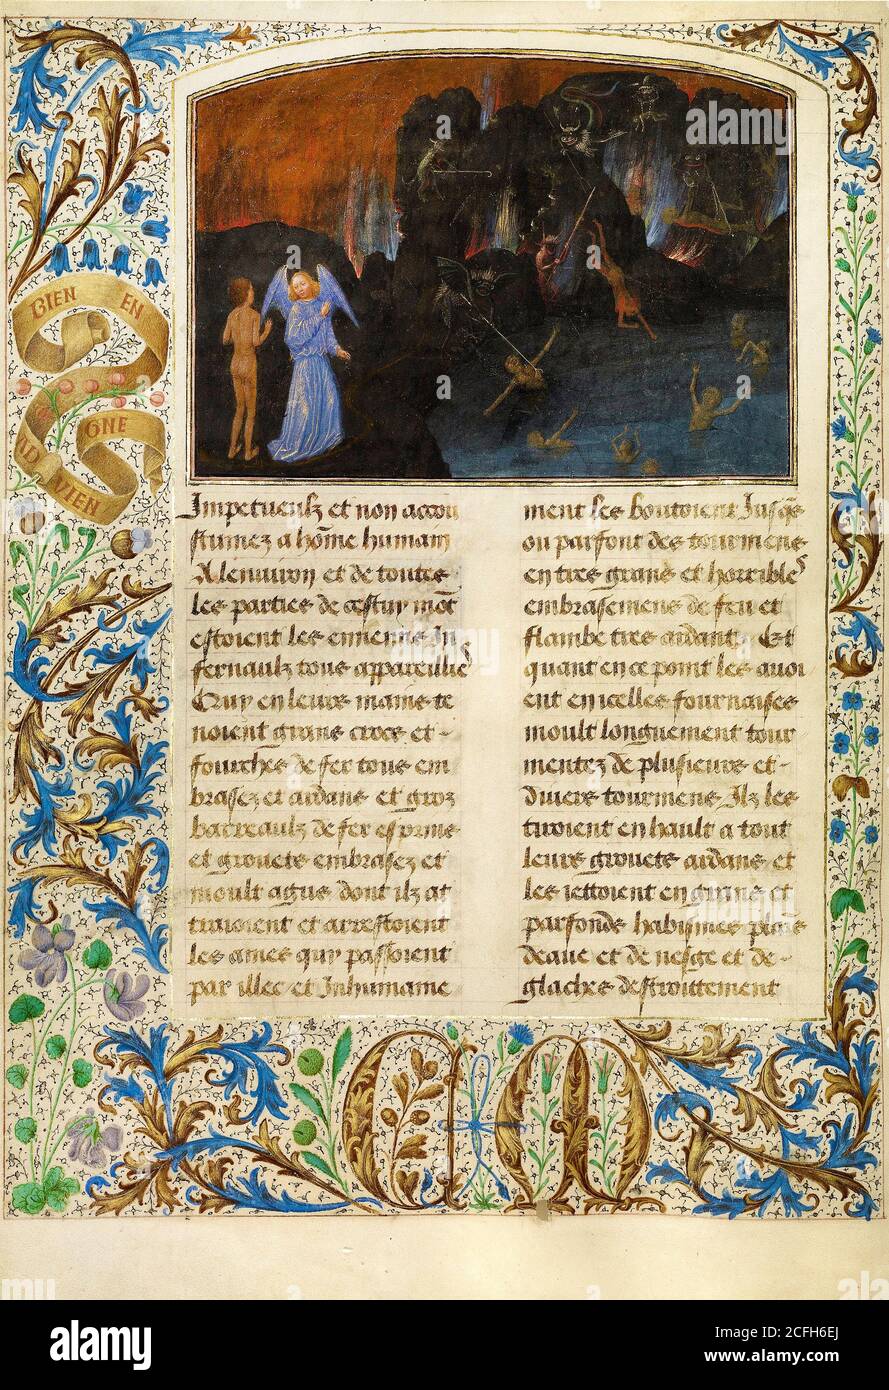 Simon Marmion, el Tormento de los incrédulos y herejes 1475 Tempera, oro, tinta sobre pergamino, el Museo J. Paul Getty, los Ángeles, EE.UU. Foto de stock